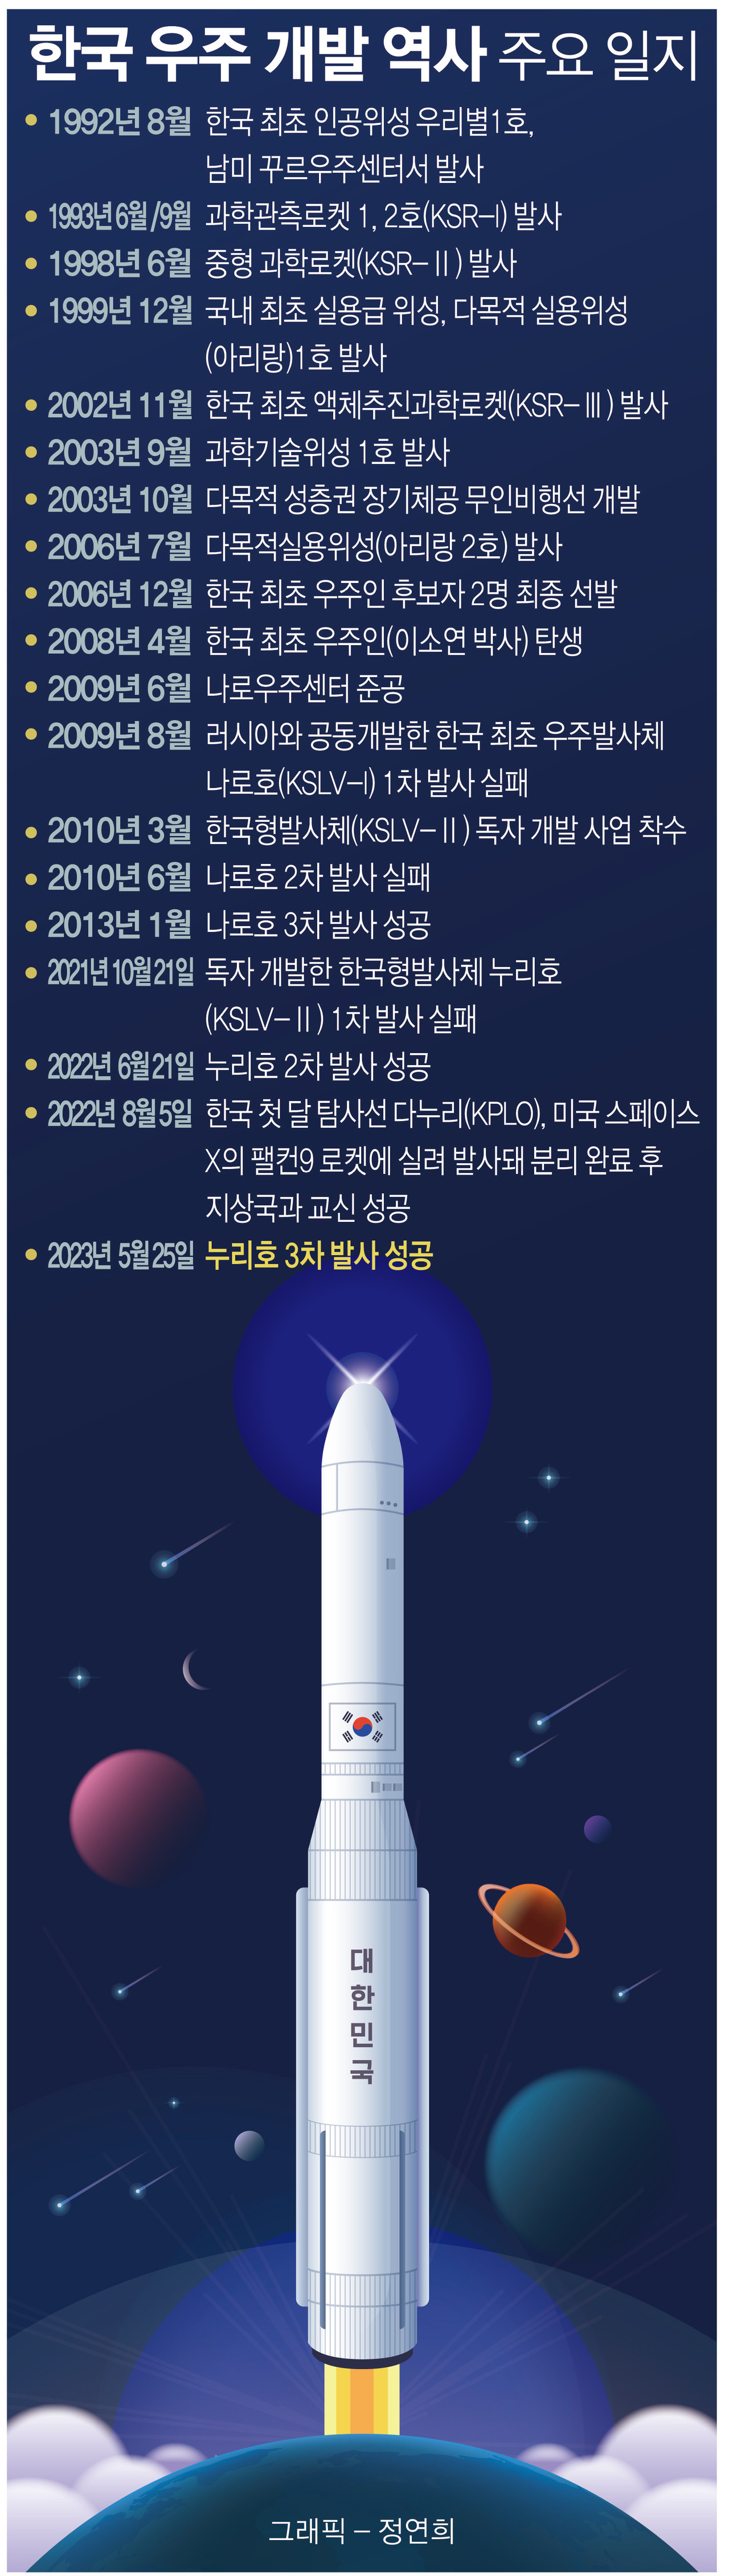 한국 우주 개발 역사 주요 일지. 그래픽 정연희 디자이너.